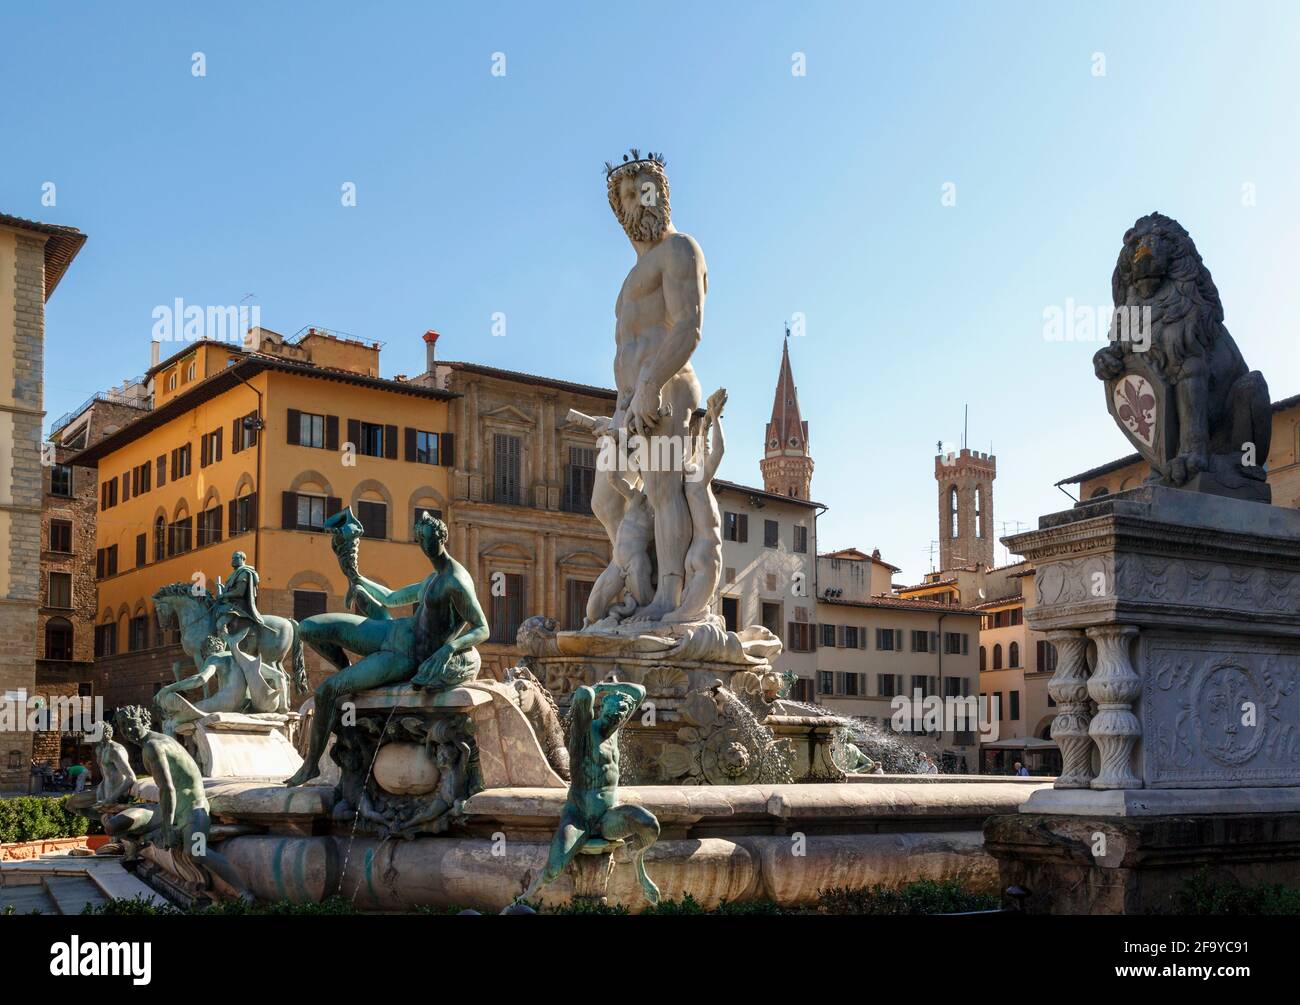 Firenze, Provincia di Firenze, Toscana, Italia. Fontana del Nettuno, Fontana di Nettuno, di Bartolomeo Ammannati, 1511 – 1592, in Piazza della Signoria. Foto Stock